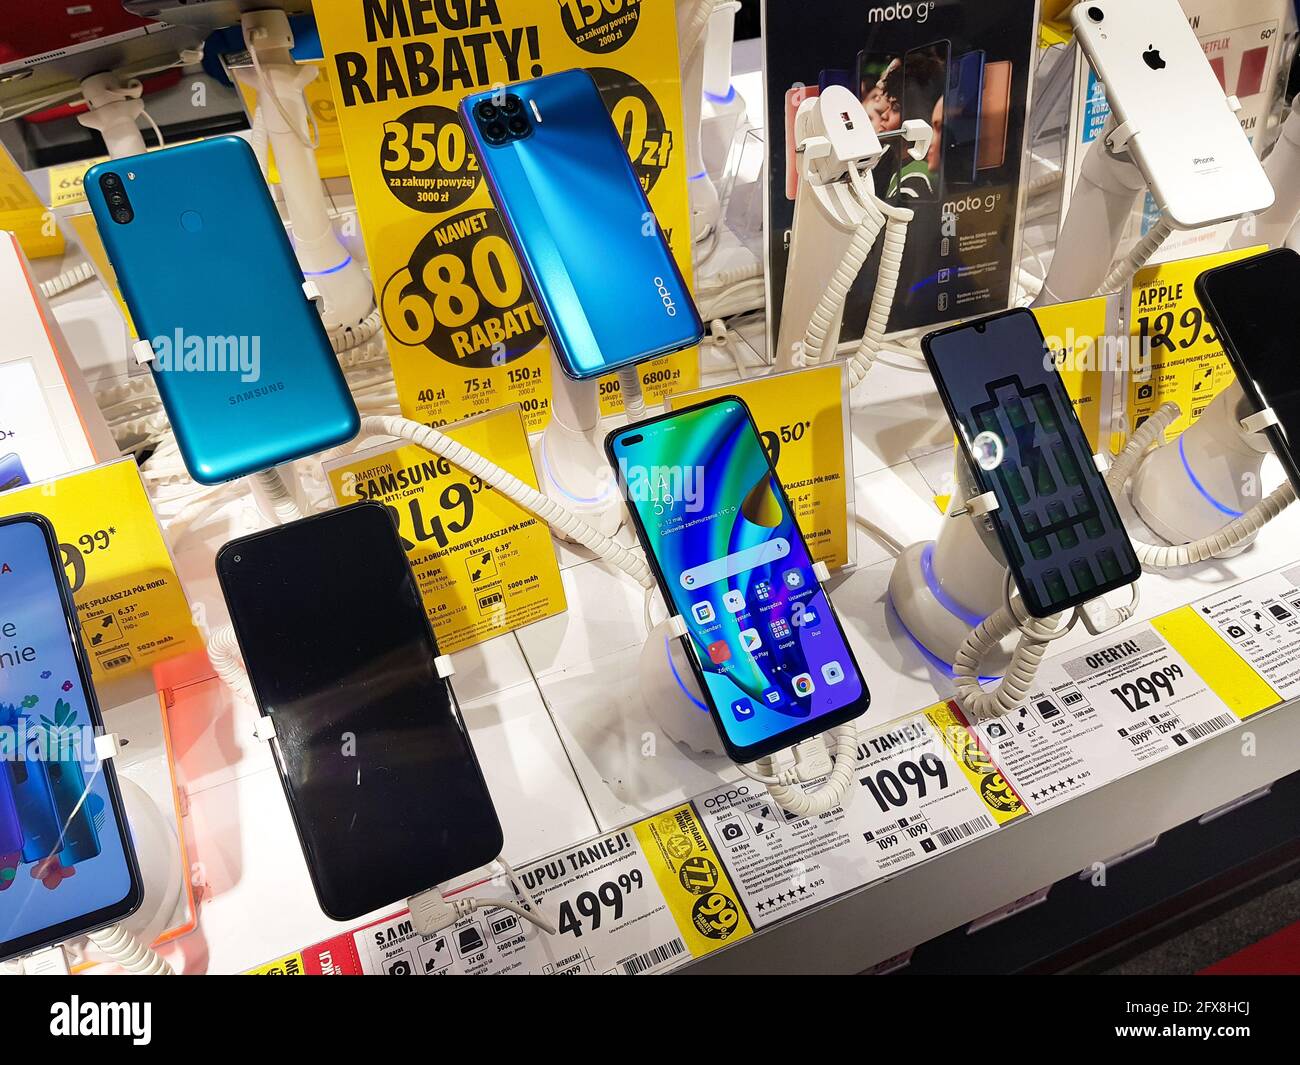 Media Expert store, Samsung, Xiaomi, smartphone iPhone, più telefoni cellulari, prodotti in esposizione, negozio di elettronica di consumo, industria telefonica, retai Foto Stock